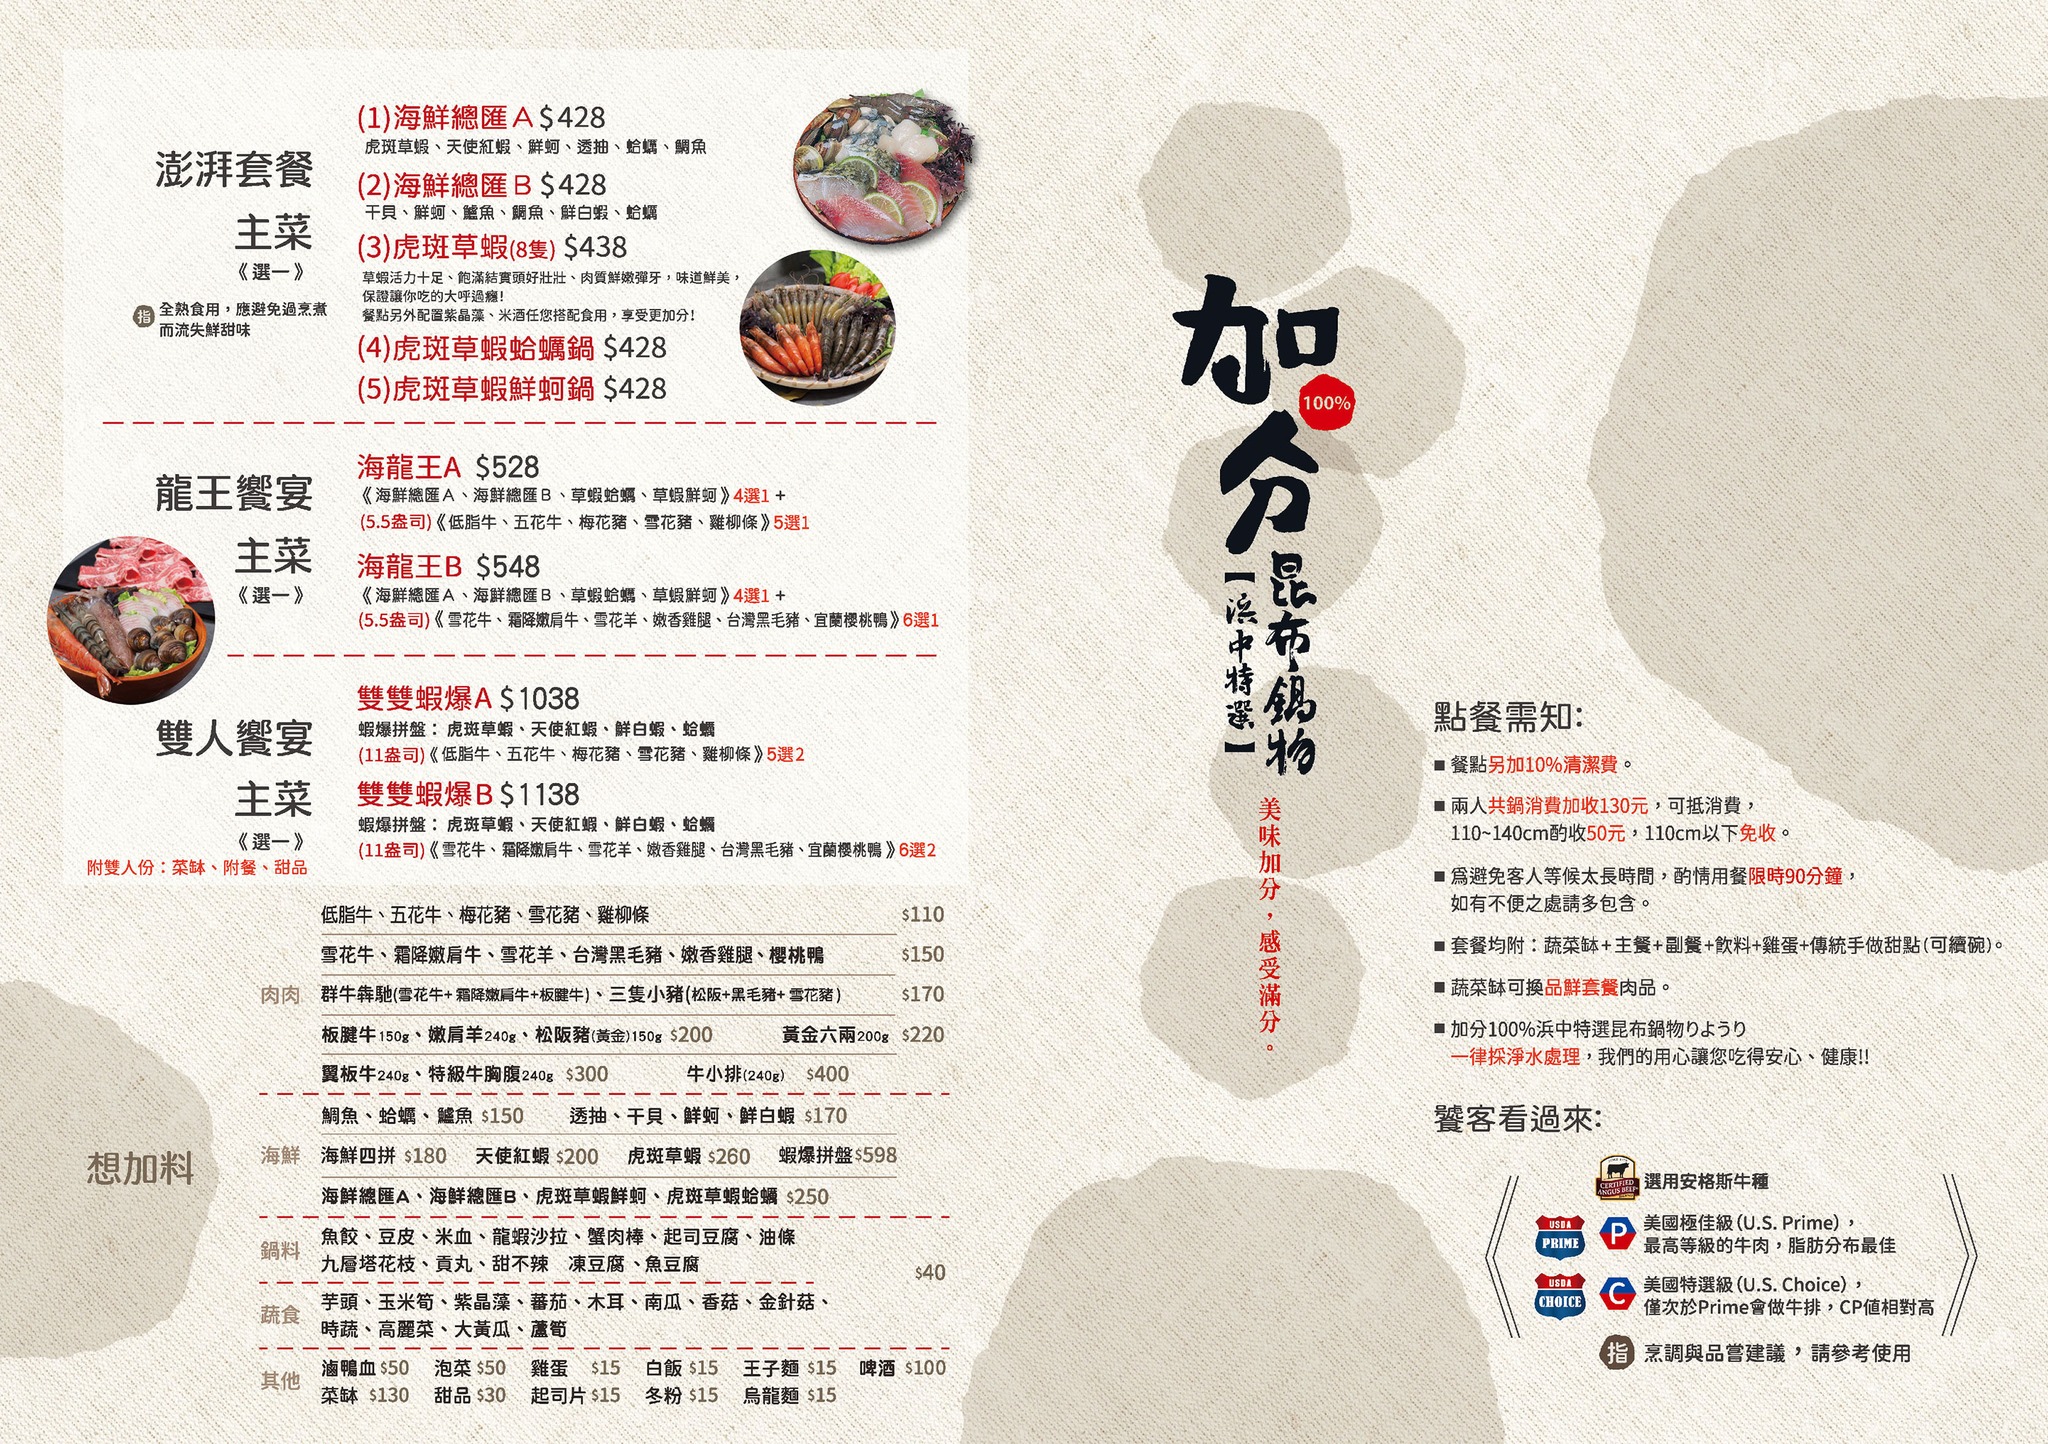 永和火鍋-加分100%浜中特選昆布鍋物,全台北最好吃的牛奶鍋 @G子的漫畫生活